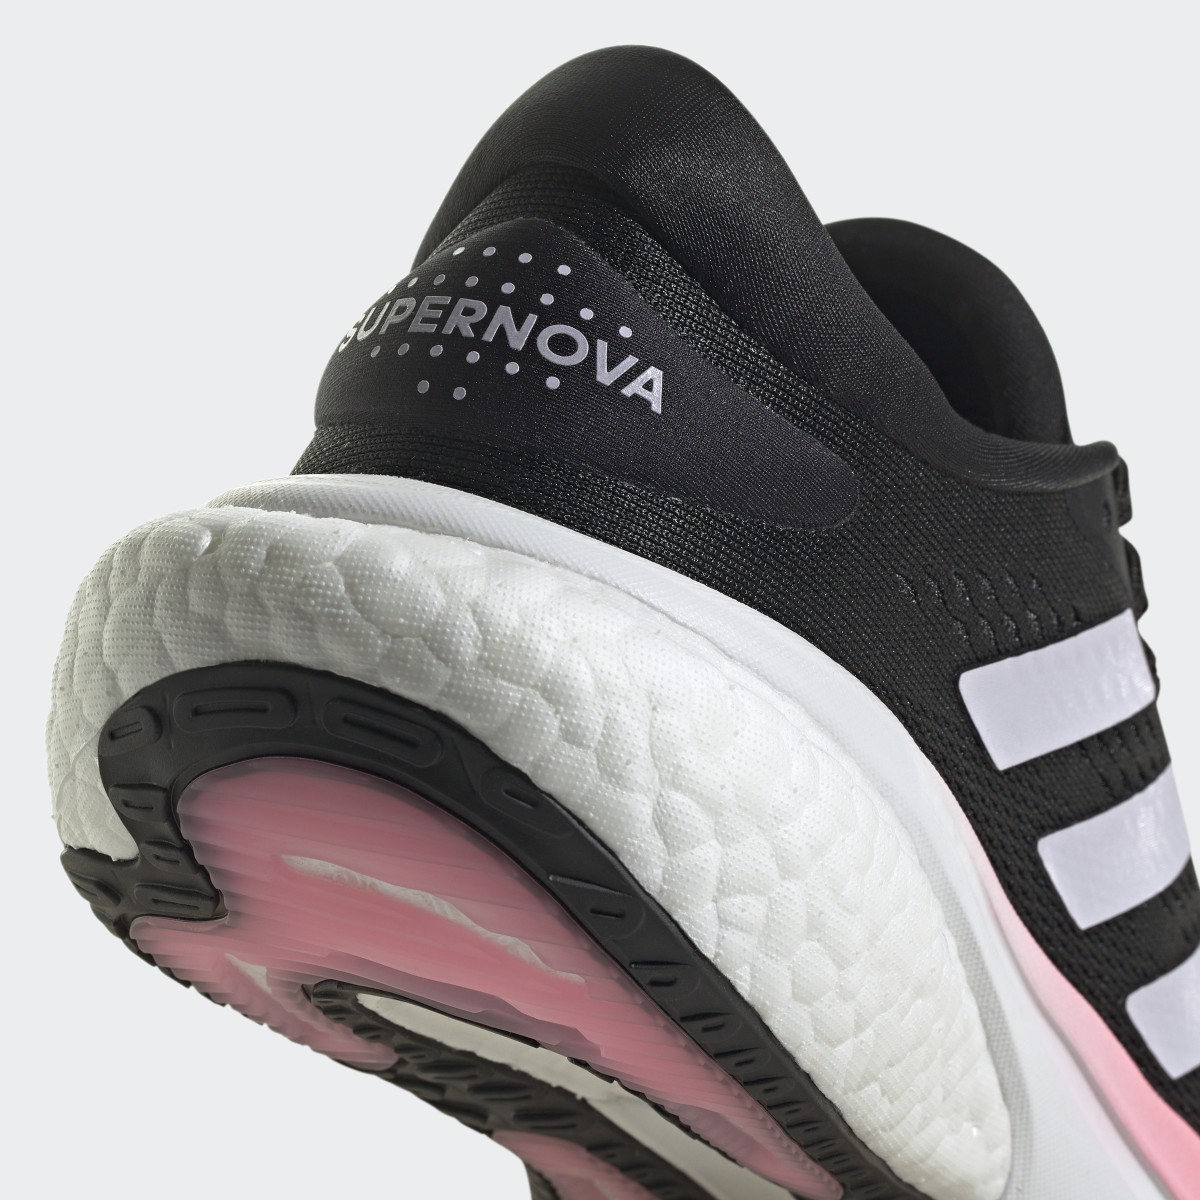 Adidas Supernova 2.0 Shoes. 9